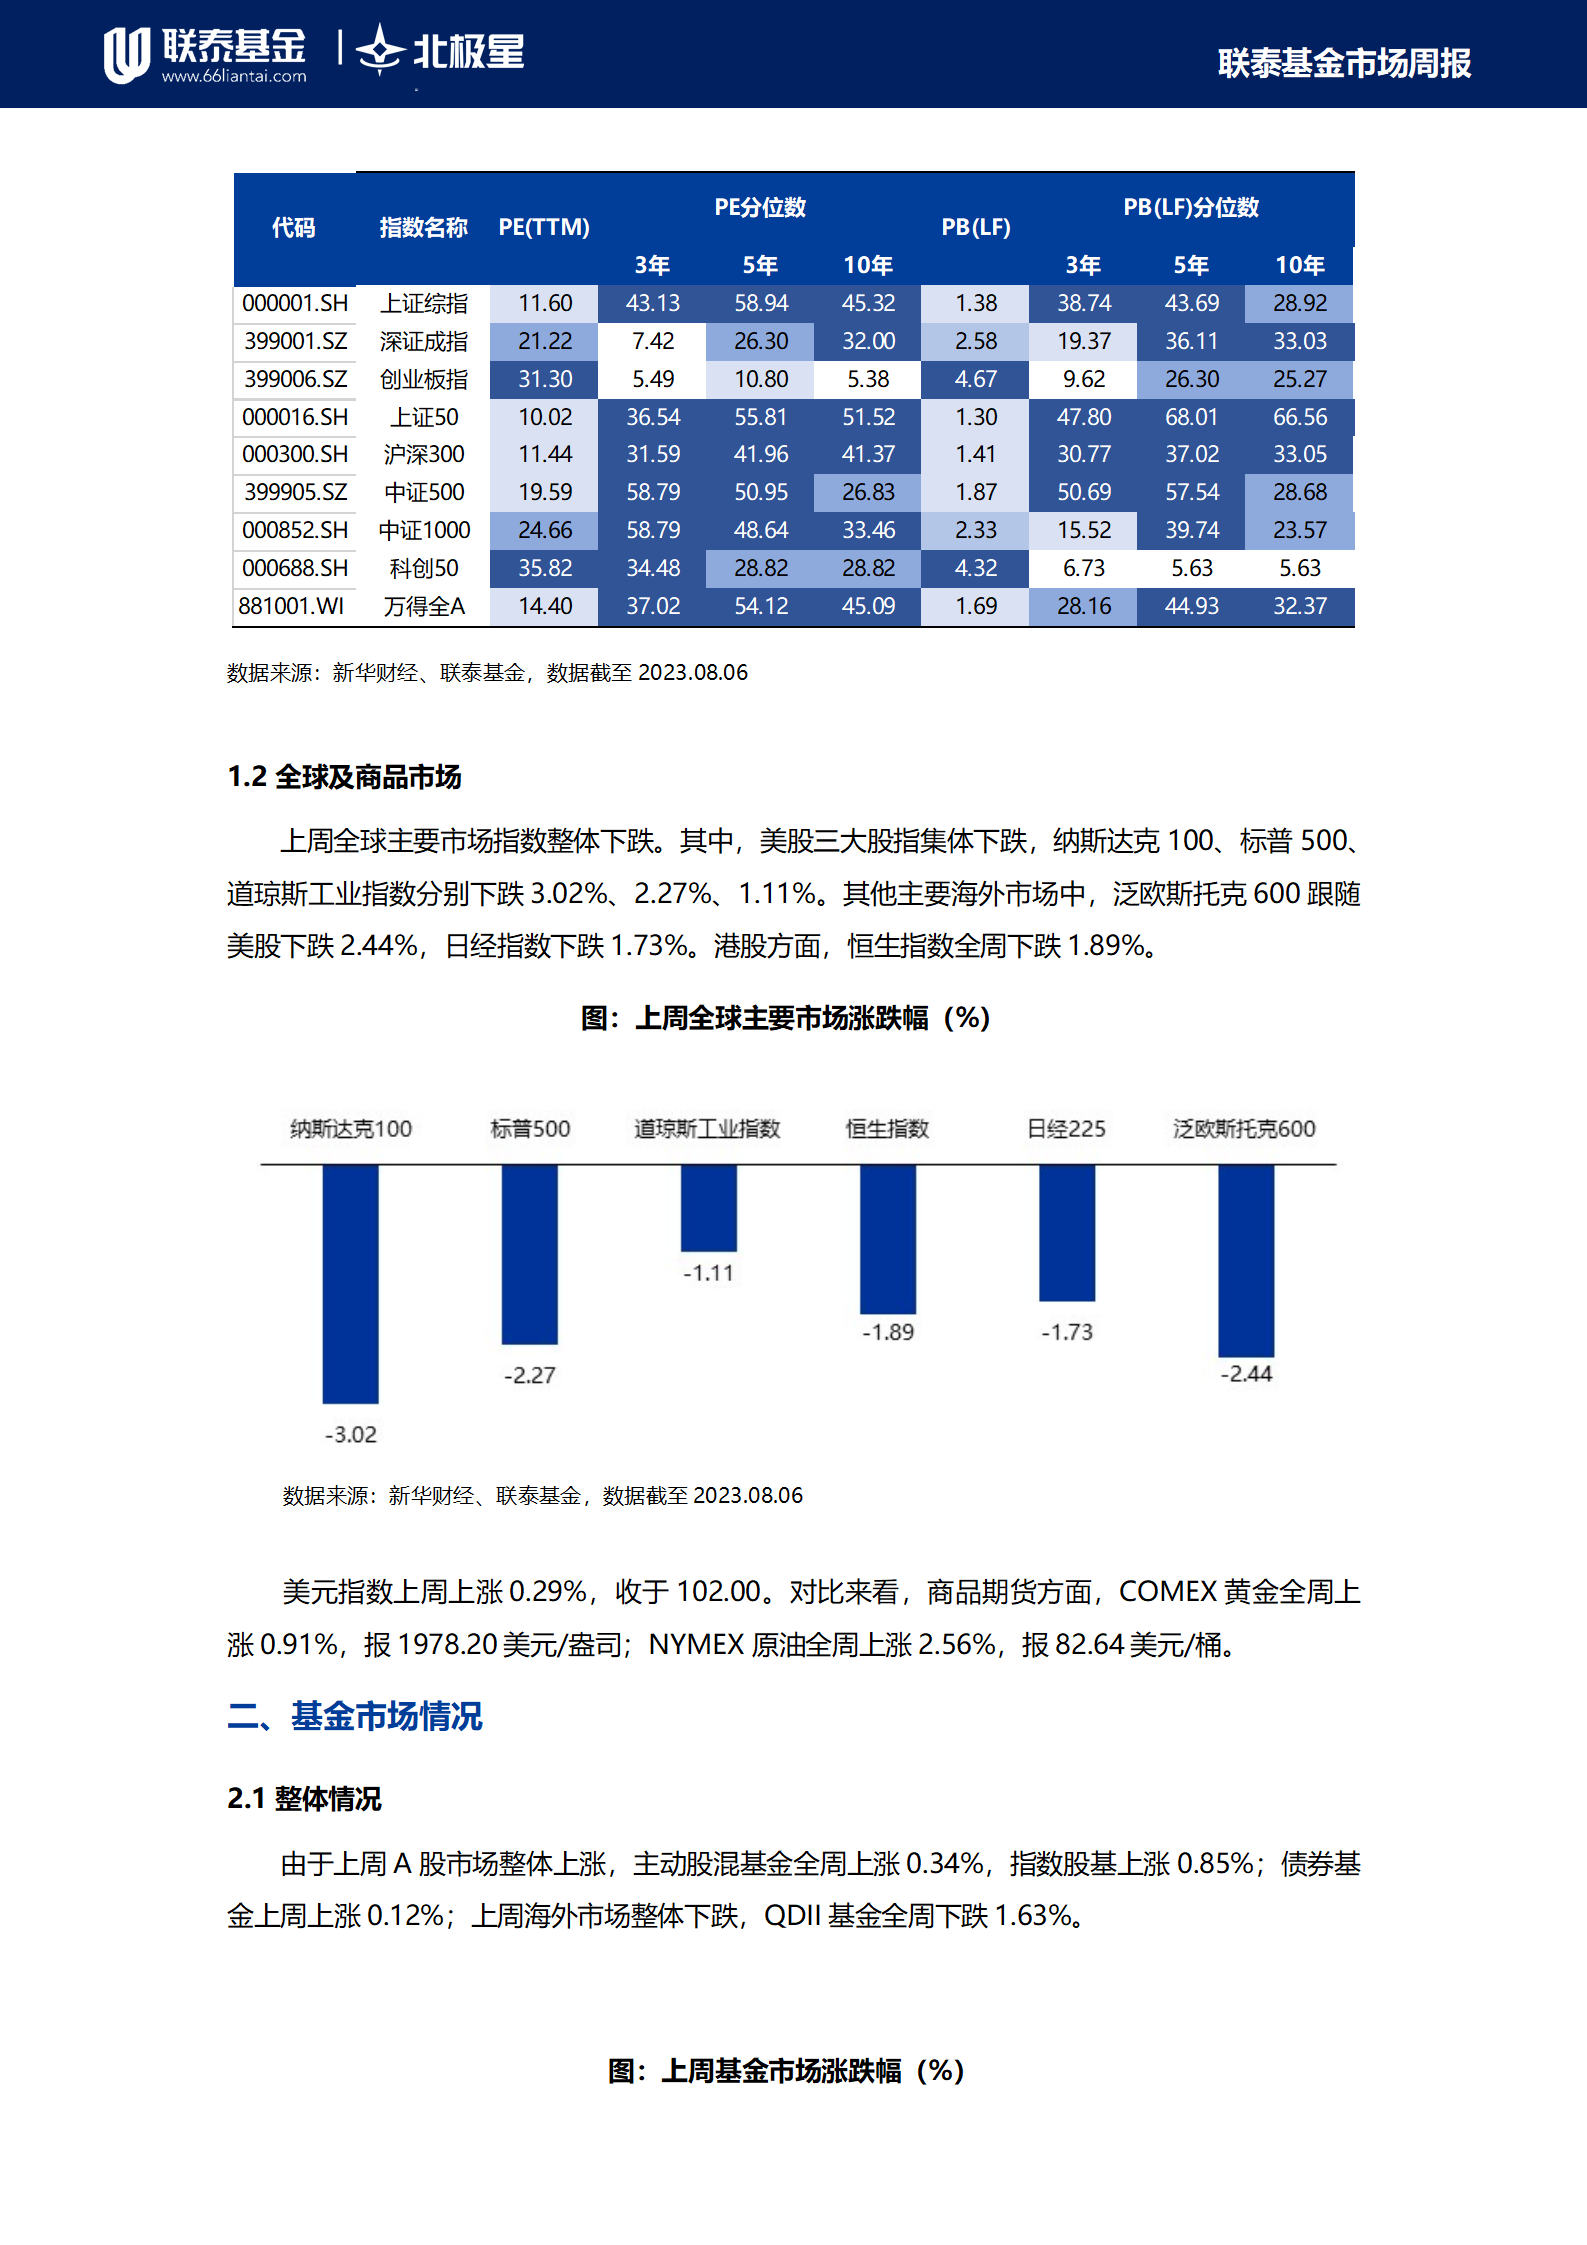 新華財經-聯泰基金市場周報20230806(1)_03